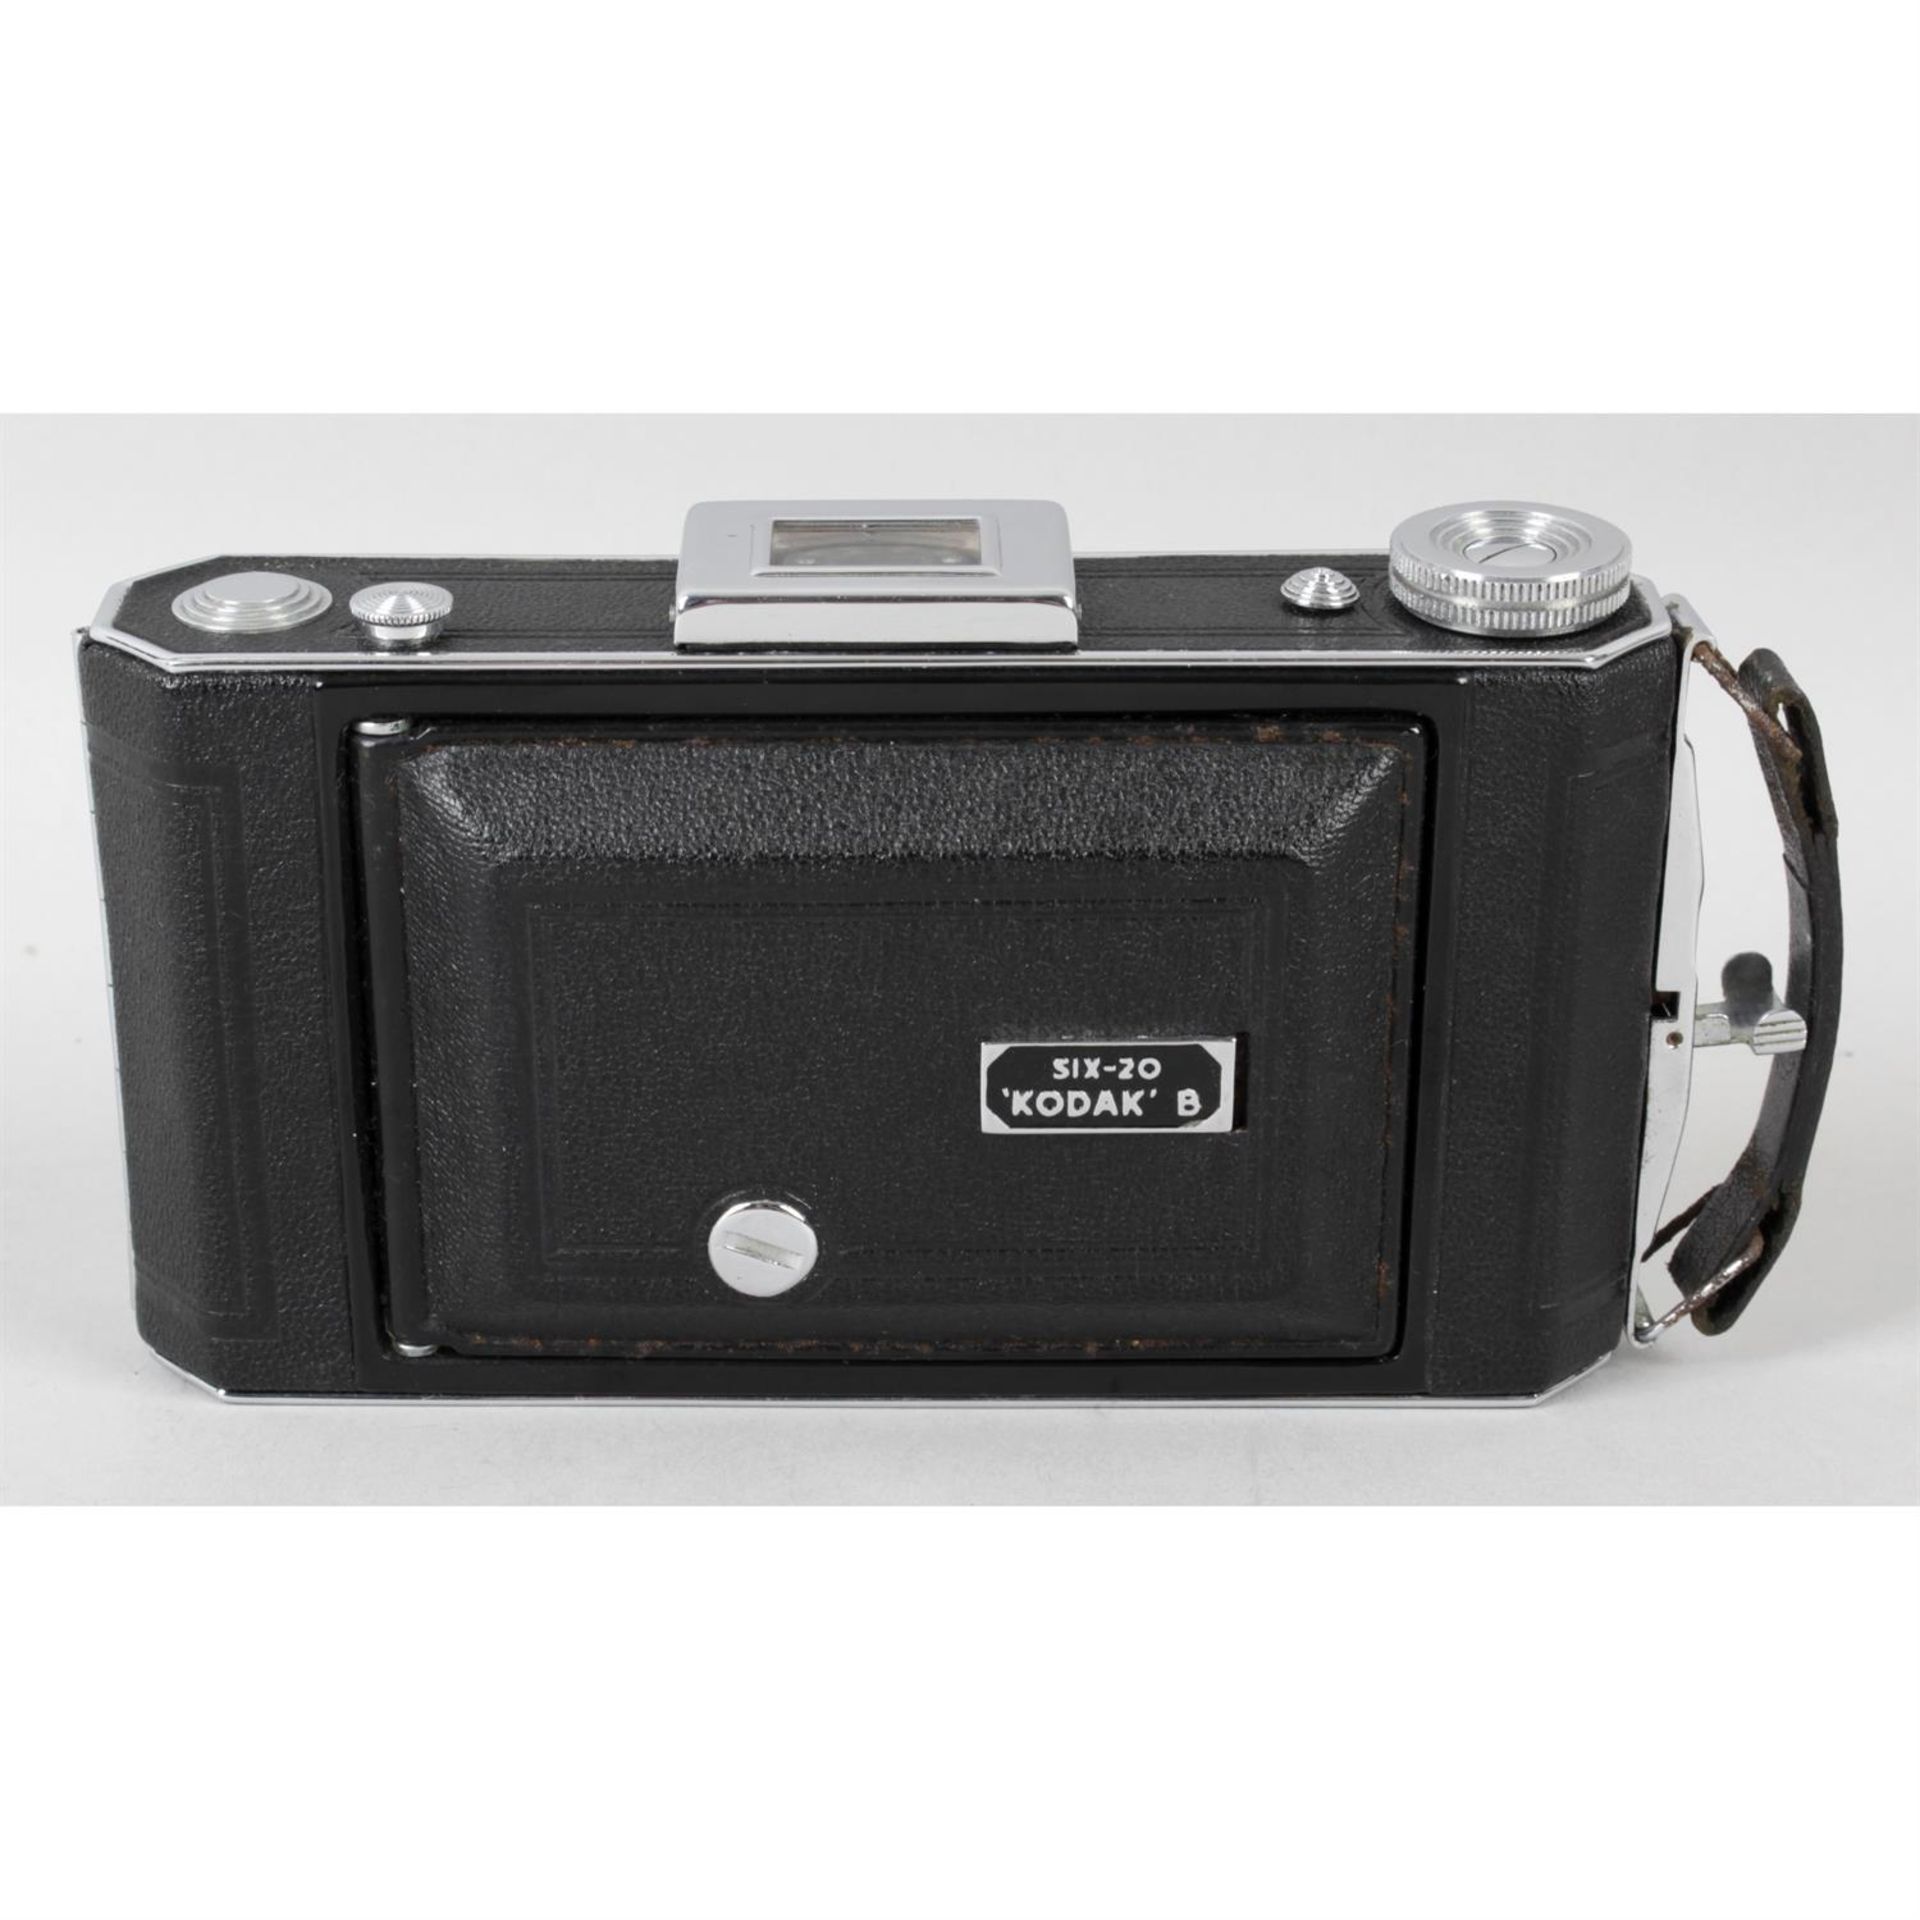 A boxed Six-20 Kodak B camera